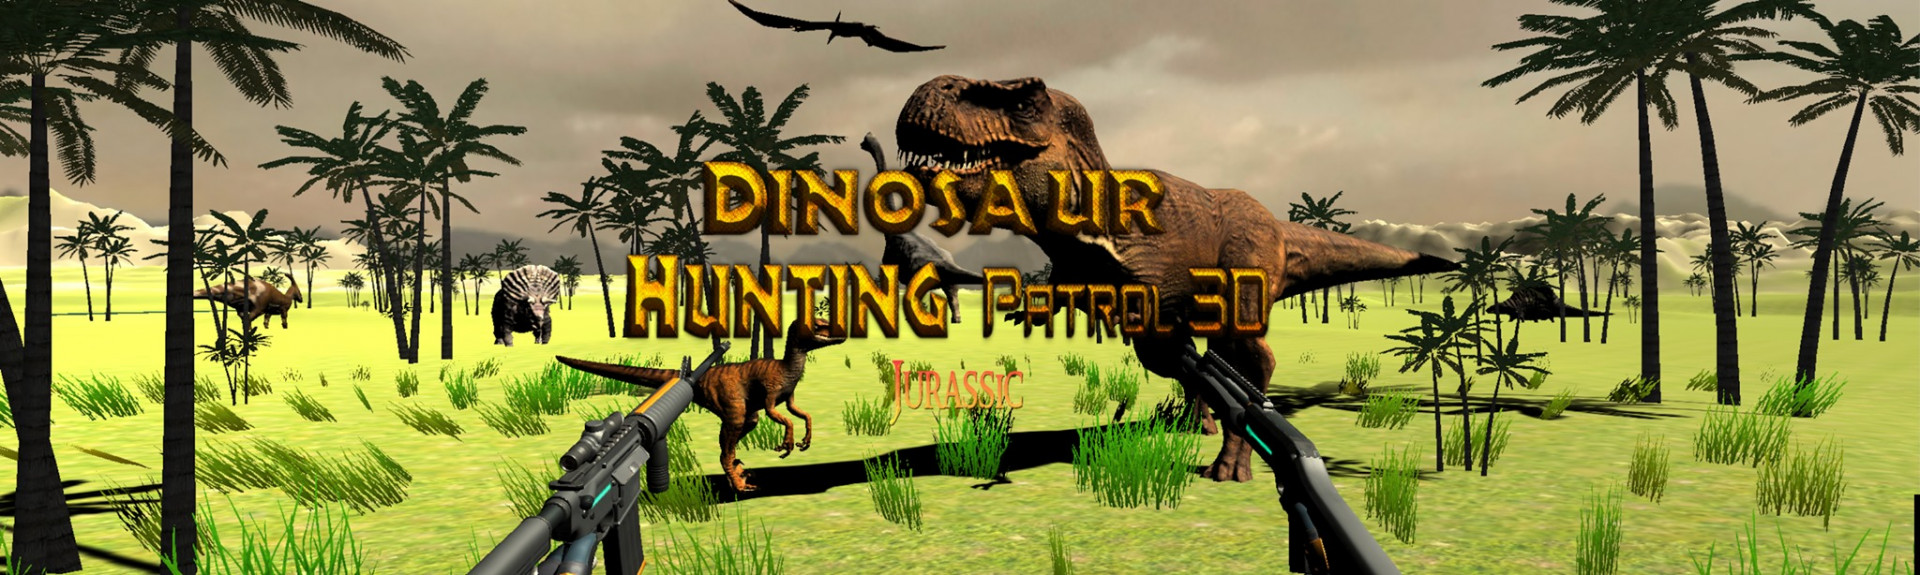 Dinosaur Hunting Patrol 3D Jurassic